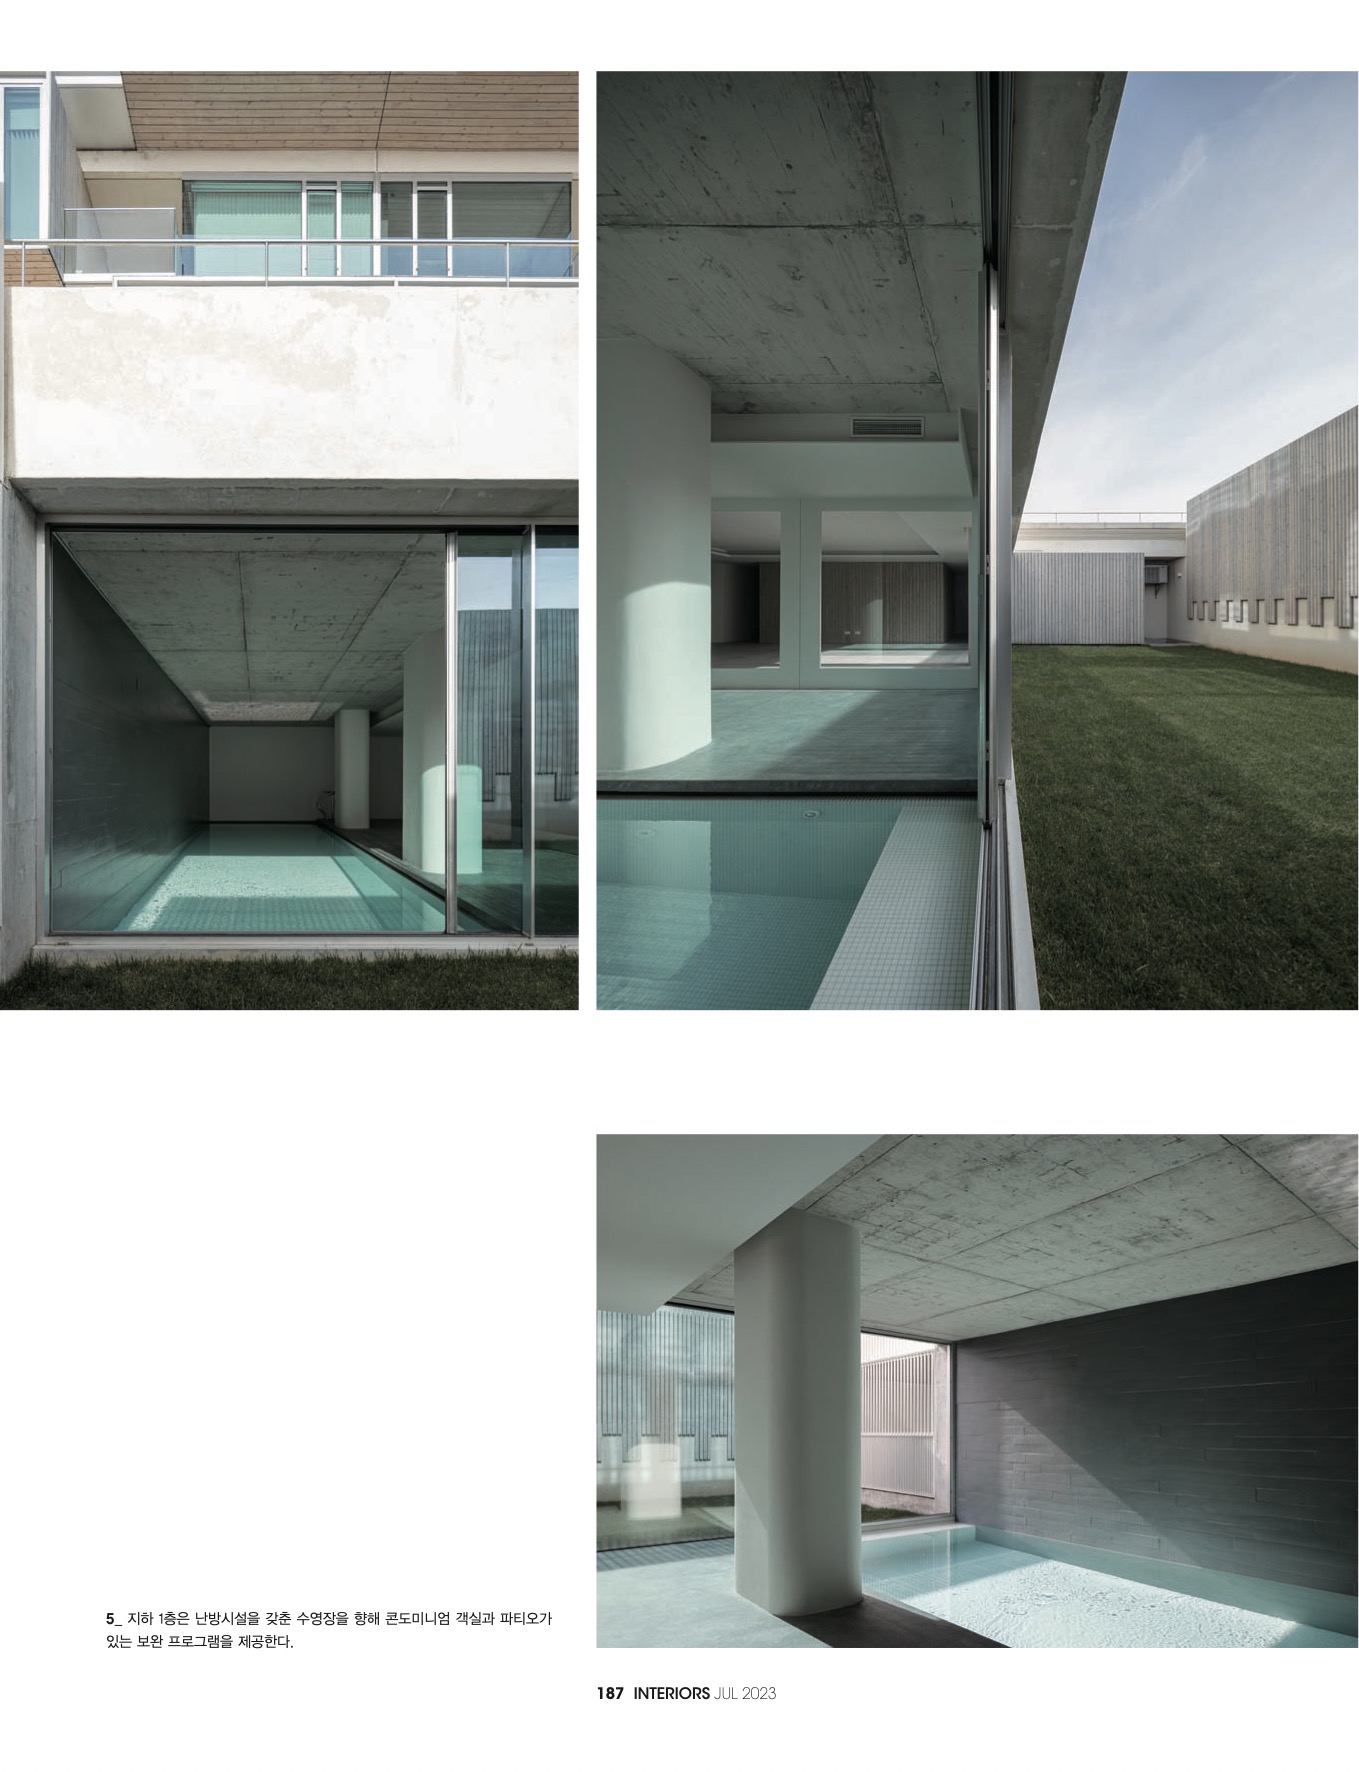 INTERIORS KOREA 442 do atelier RVDM Arquitectos com fotografia arquitetura de ivo tavares studio - architectural photography